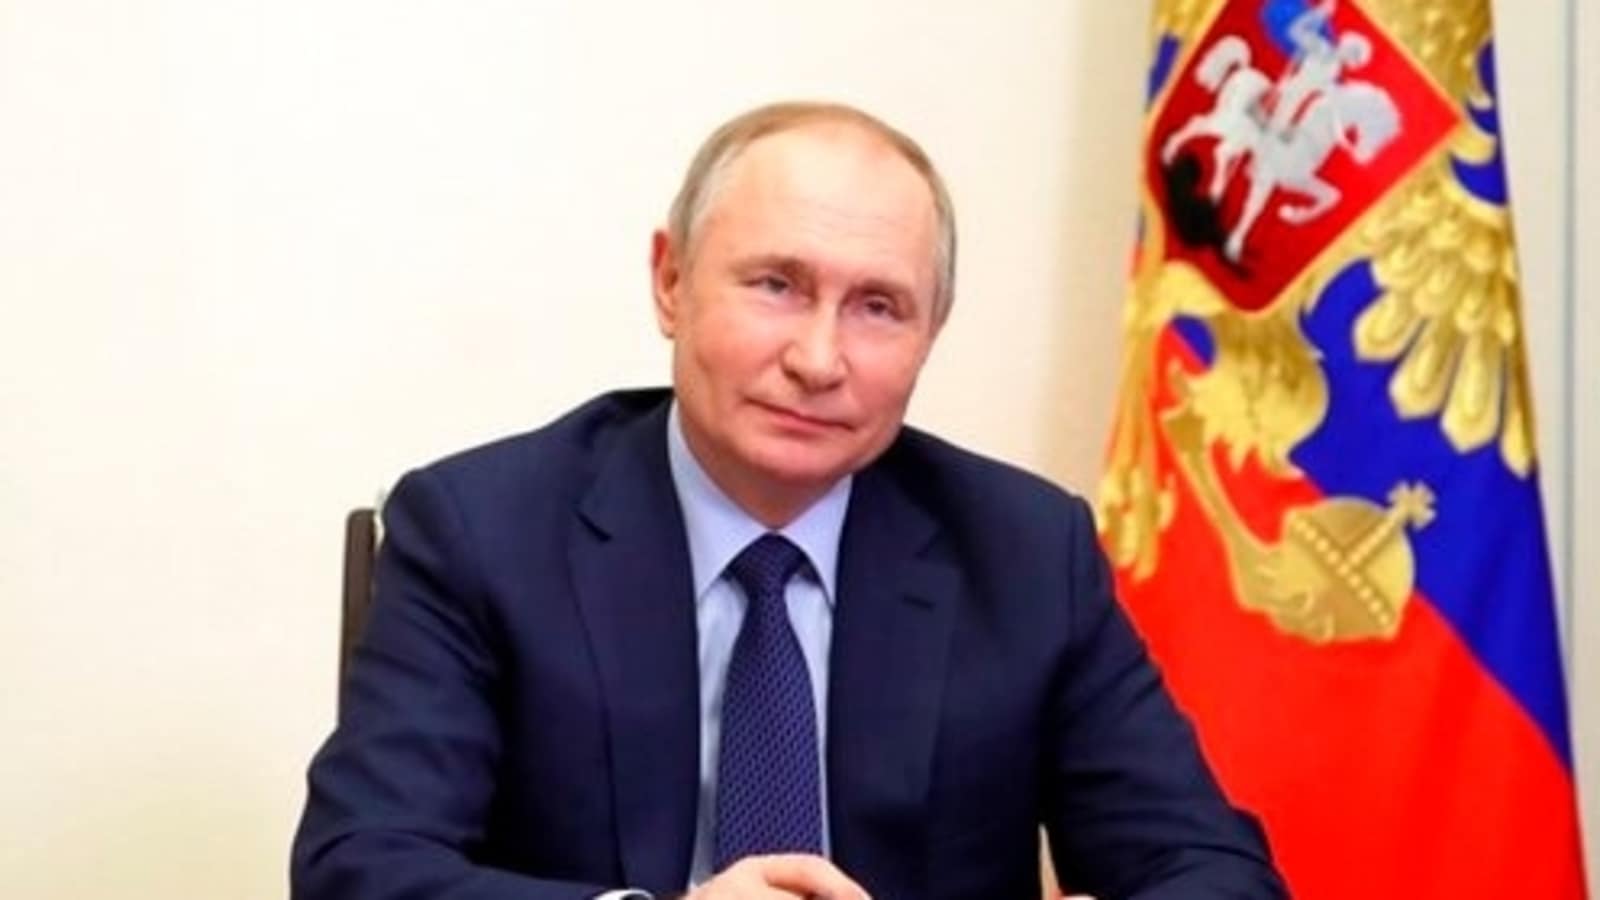 Guardias de Putin recogen su caca en viajes al extranjero y la traen a casa: Informes |  Noticias del mundo